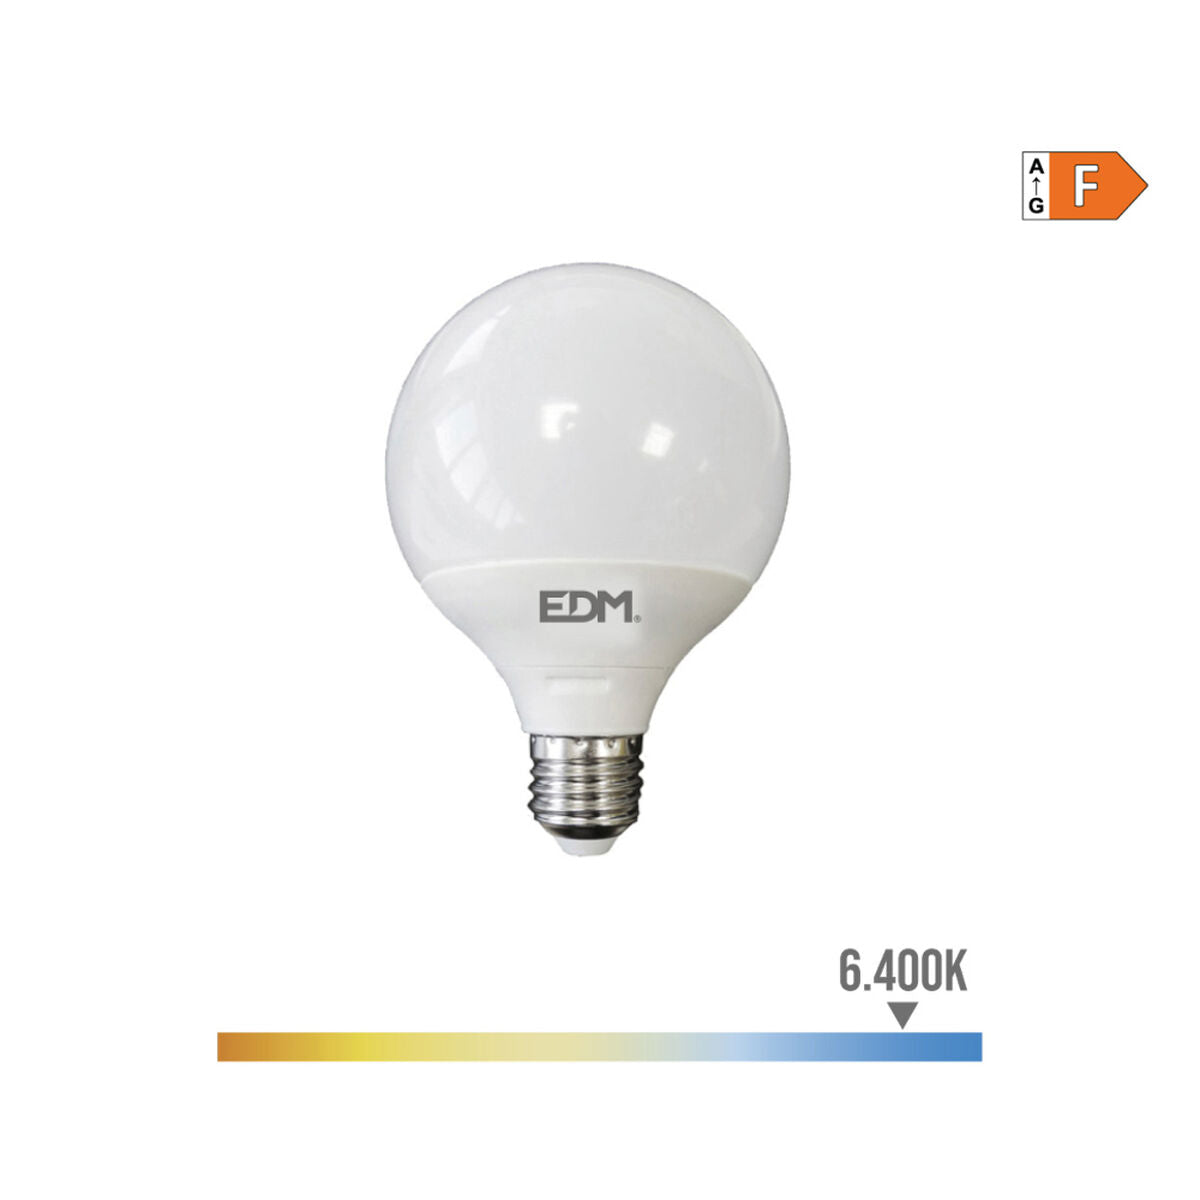 LED lamp EDM F 15 W E27 1521 Lm Ø 12,5 x 14 cm (6400 K)